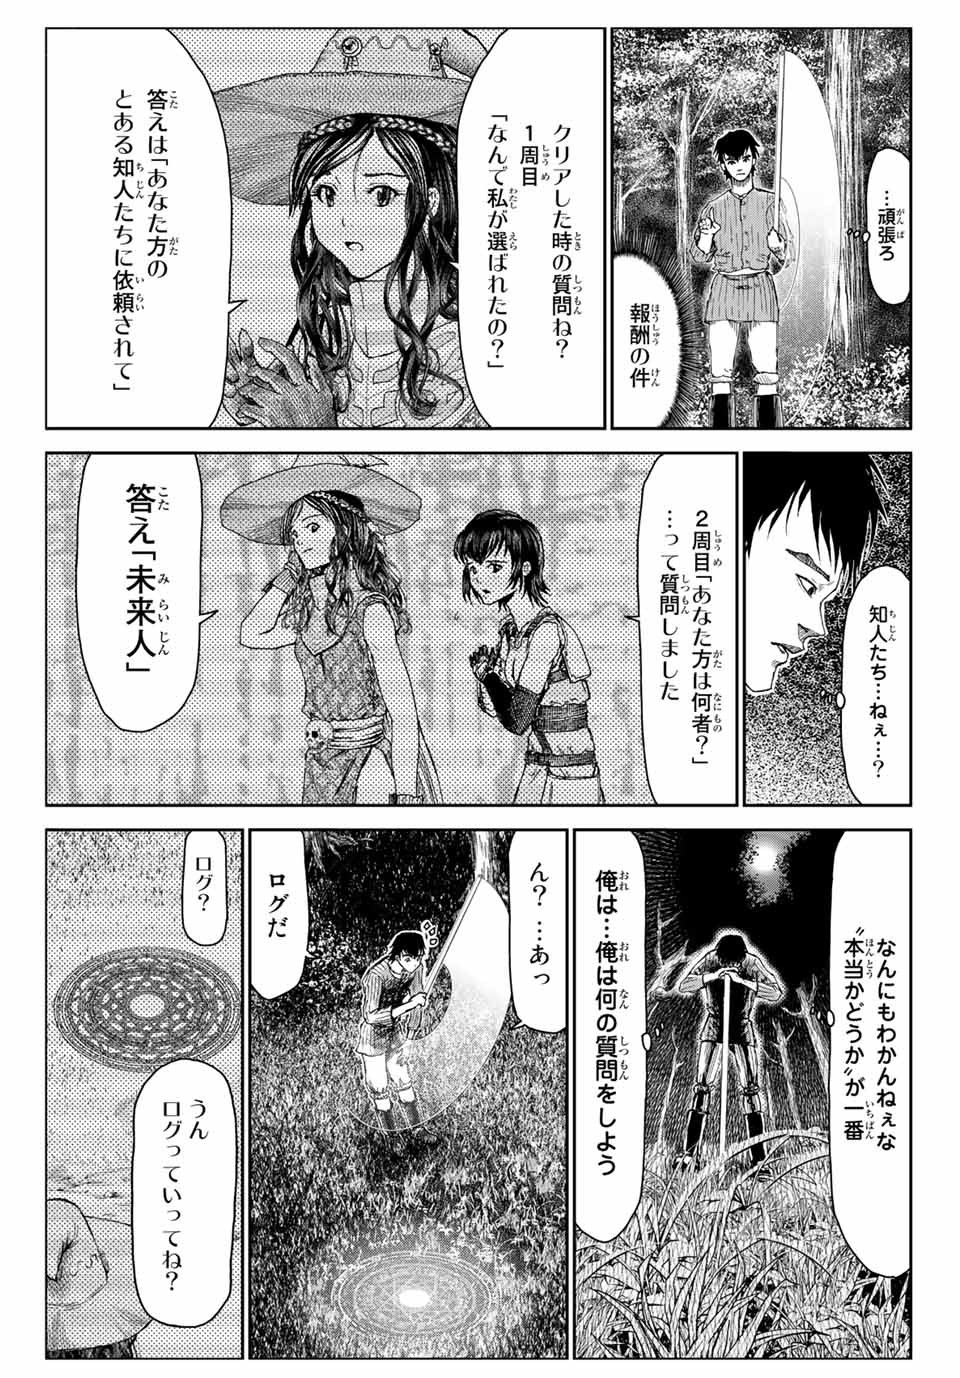 100-man no Inochi no Ue ni Ore wa Tatte Iru - Chapter 51.6 - Page 13